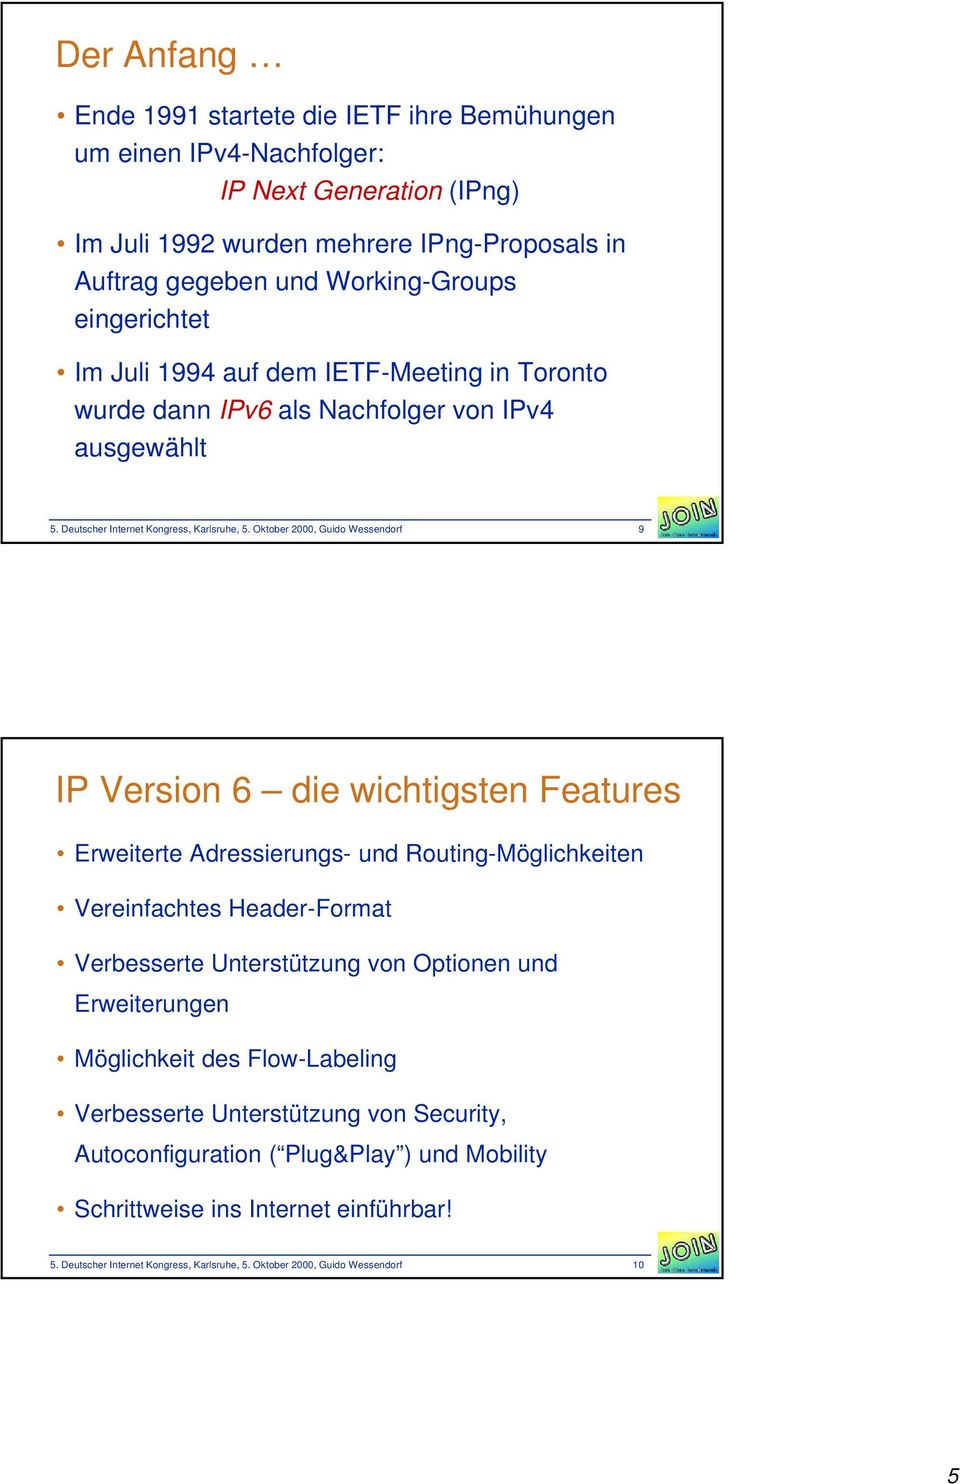 Oktober 2000, Guido Wessendorf 9 IP Version 6 die wichtigsten Features Erweiterte Adressierungs- und Routing-Möglichkeiten Vereinfachtes Header-Format Verbesserte Unterstützung von Optionen und